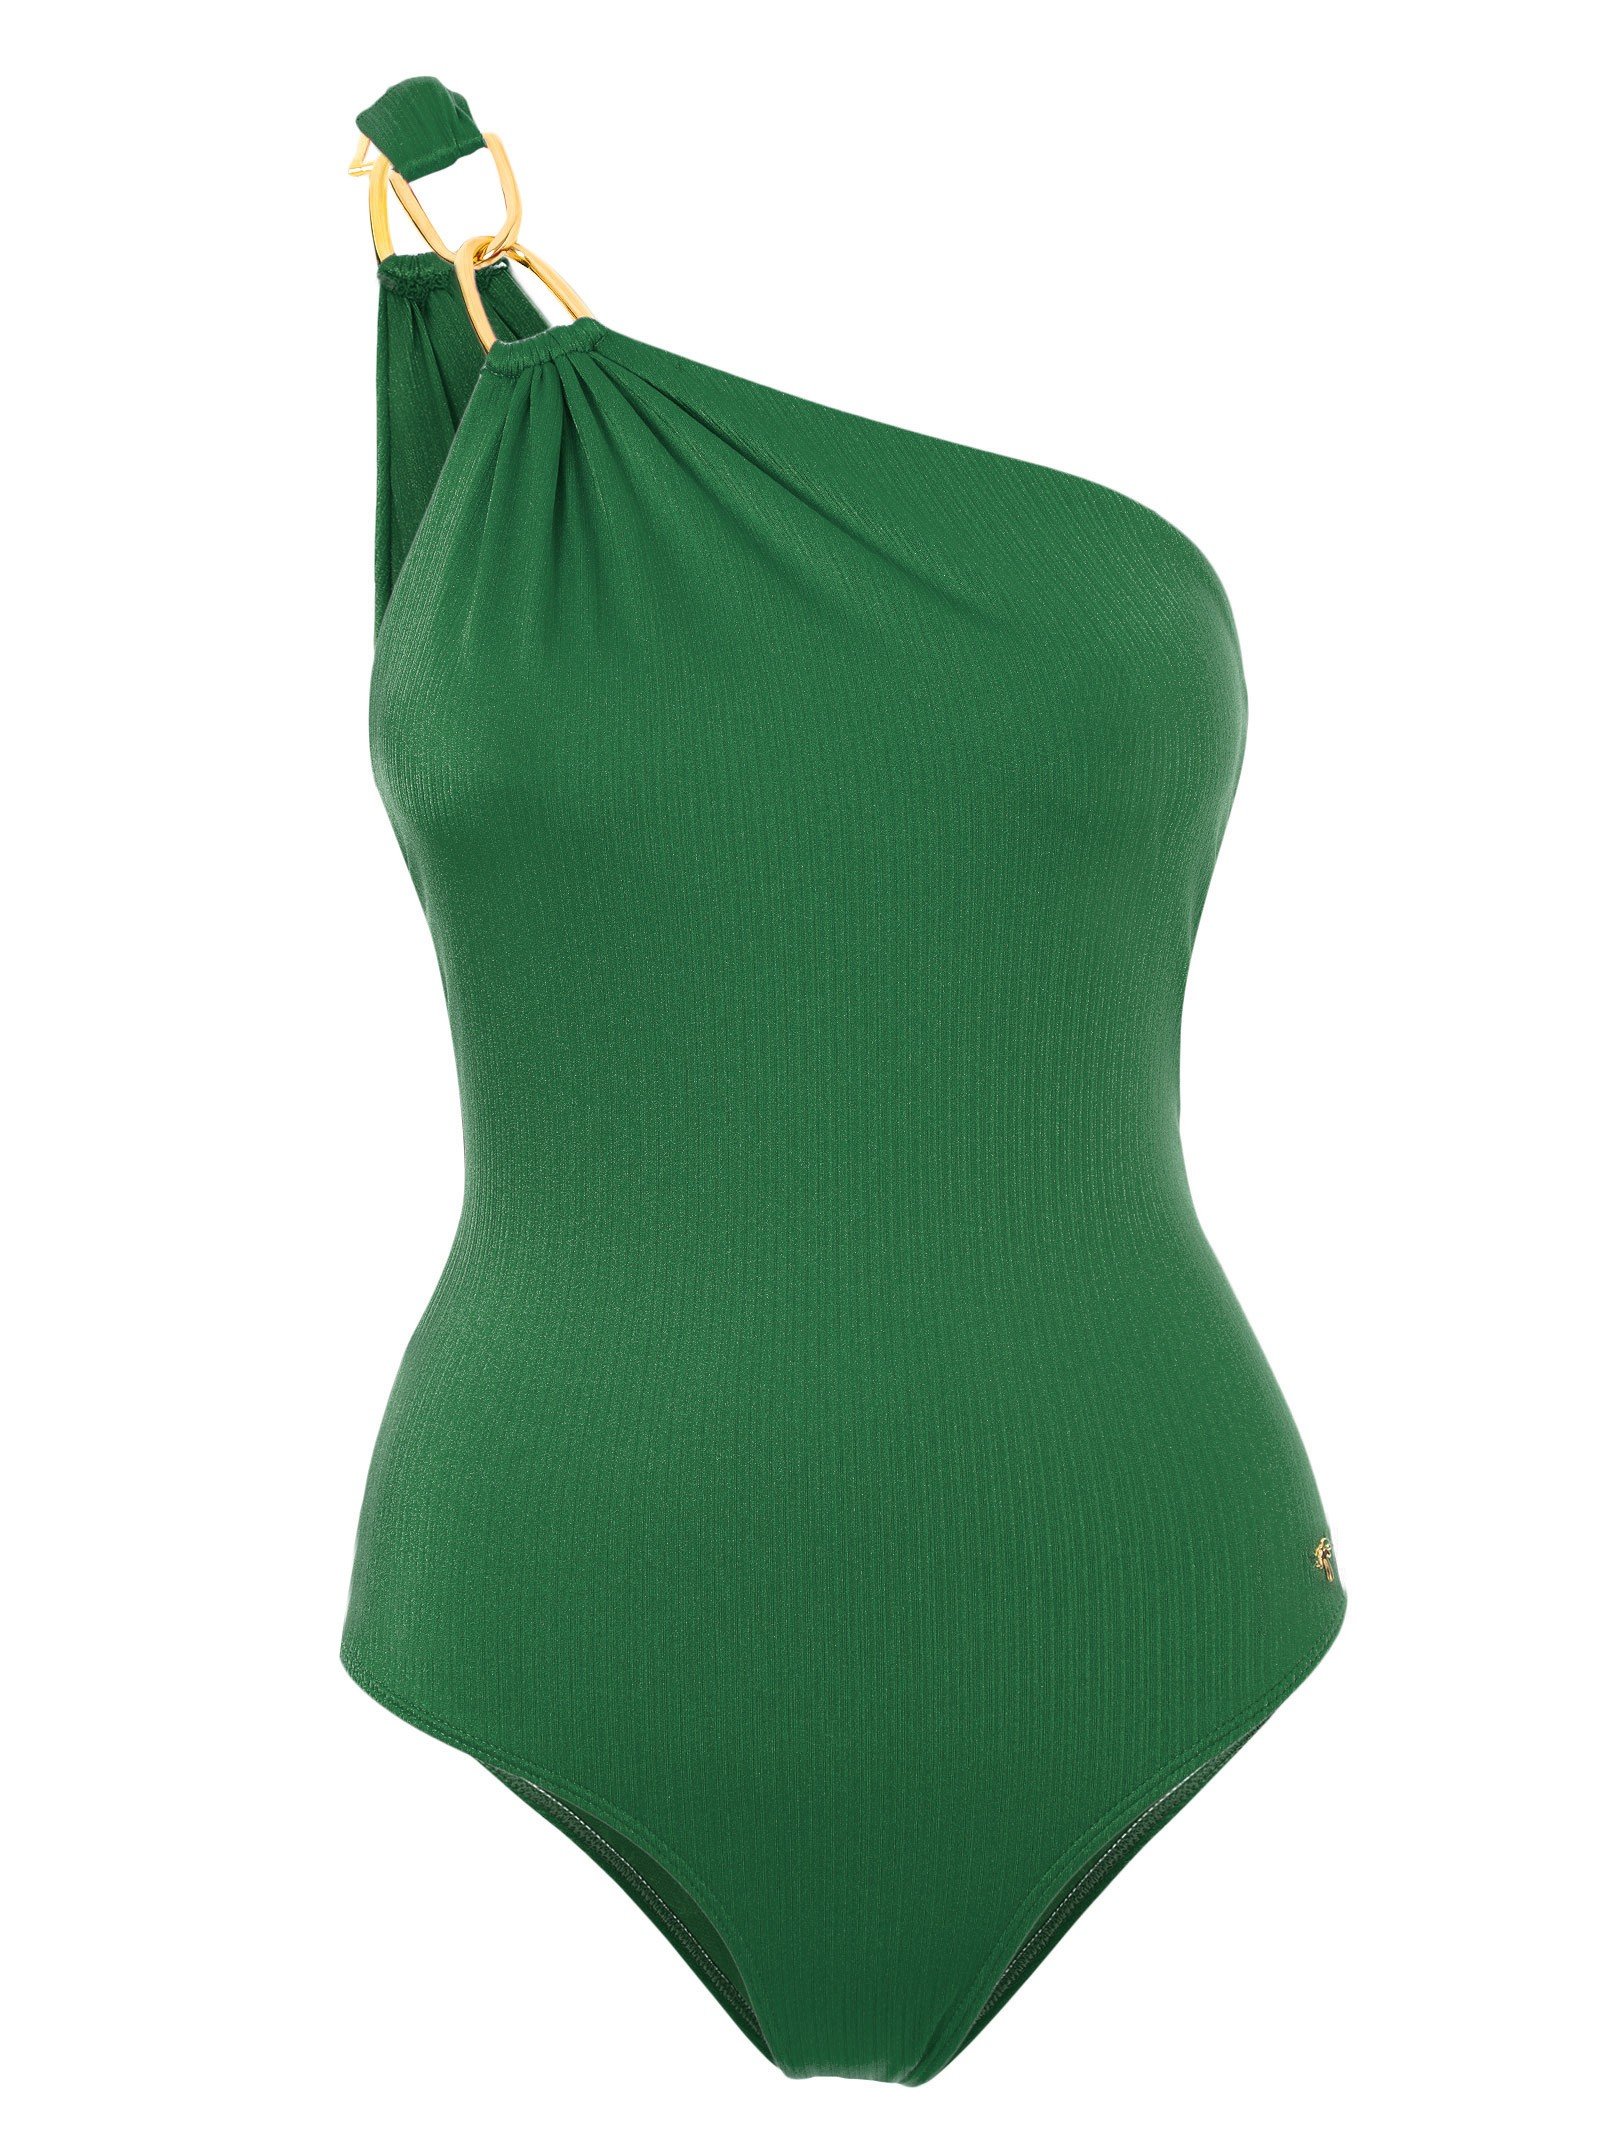 Agua de Coco Green Asymmetrical One-piece Swimsuit - Canoa Quebrada